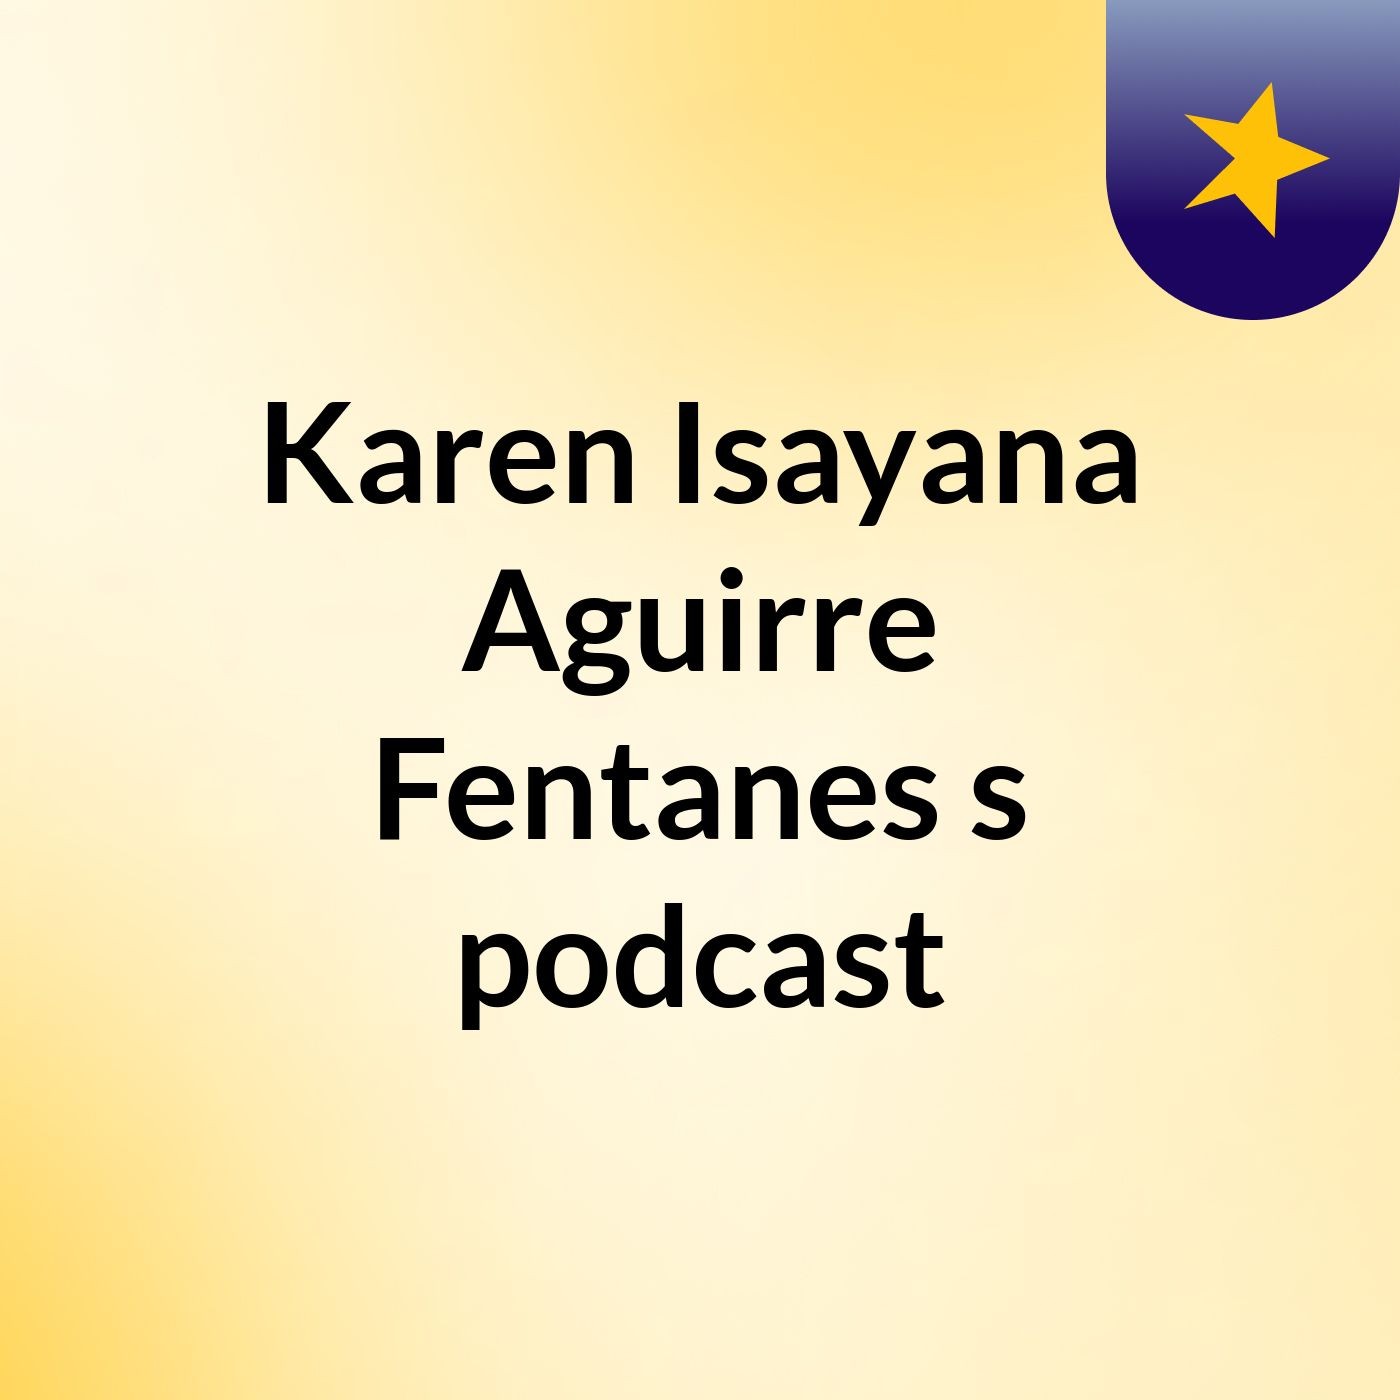 Karen Isayana Aguirre Fentanes's podcast